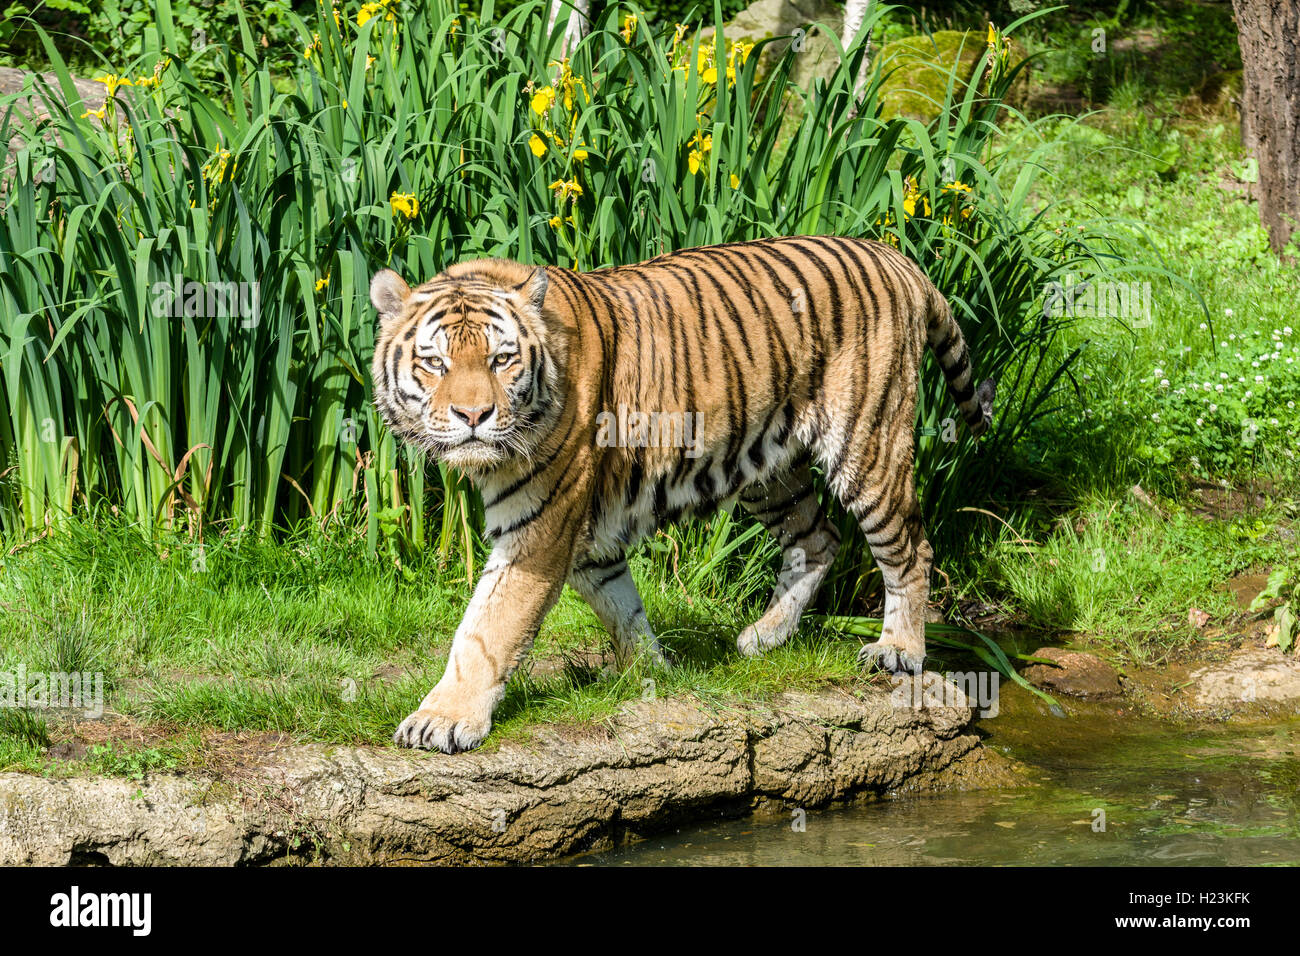 Amur Tiger (Panthera tigris altaica), marcher le long d'un étang, captive, Leipzig, Saxe, Allemagne Banque D'Images